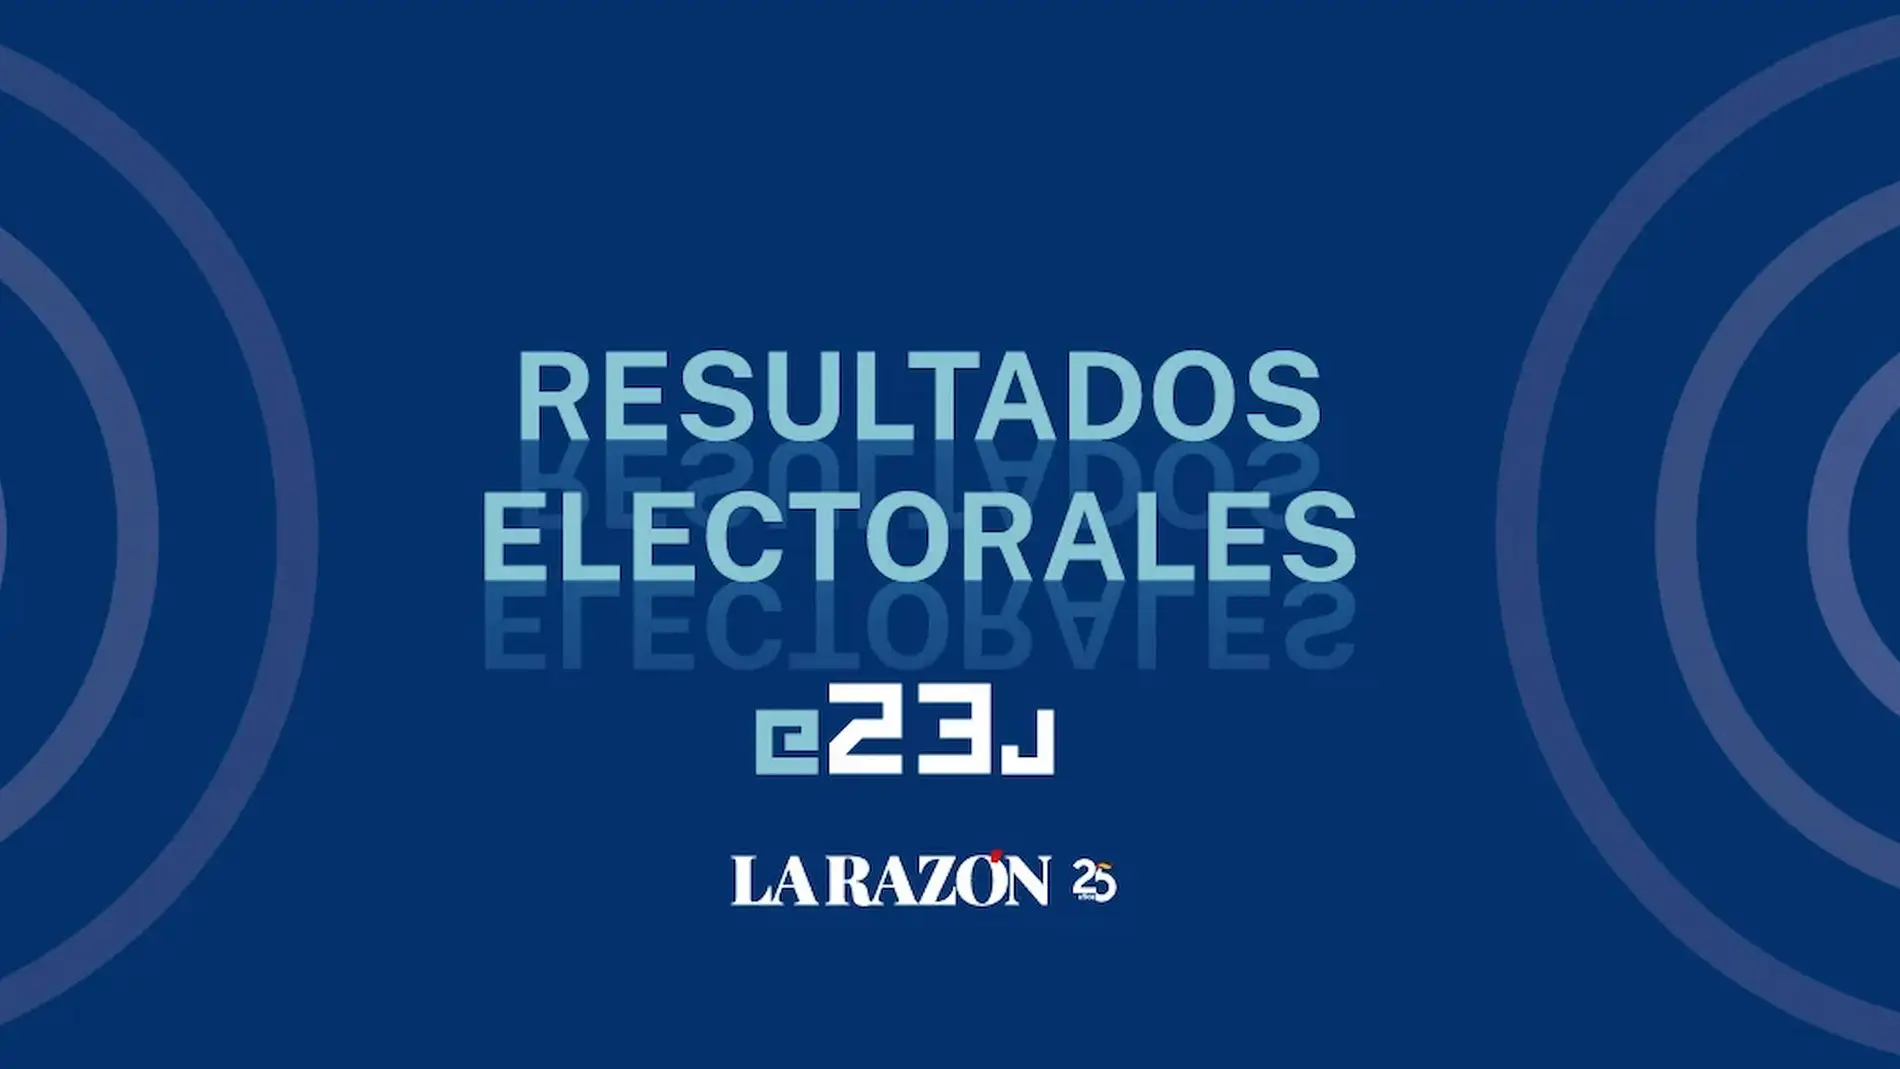 Resultados electorales 23J